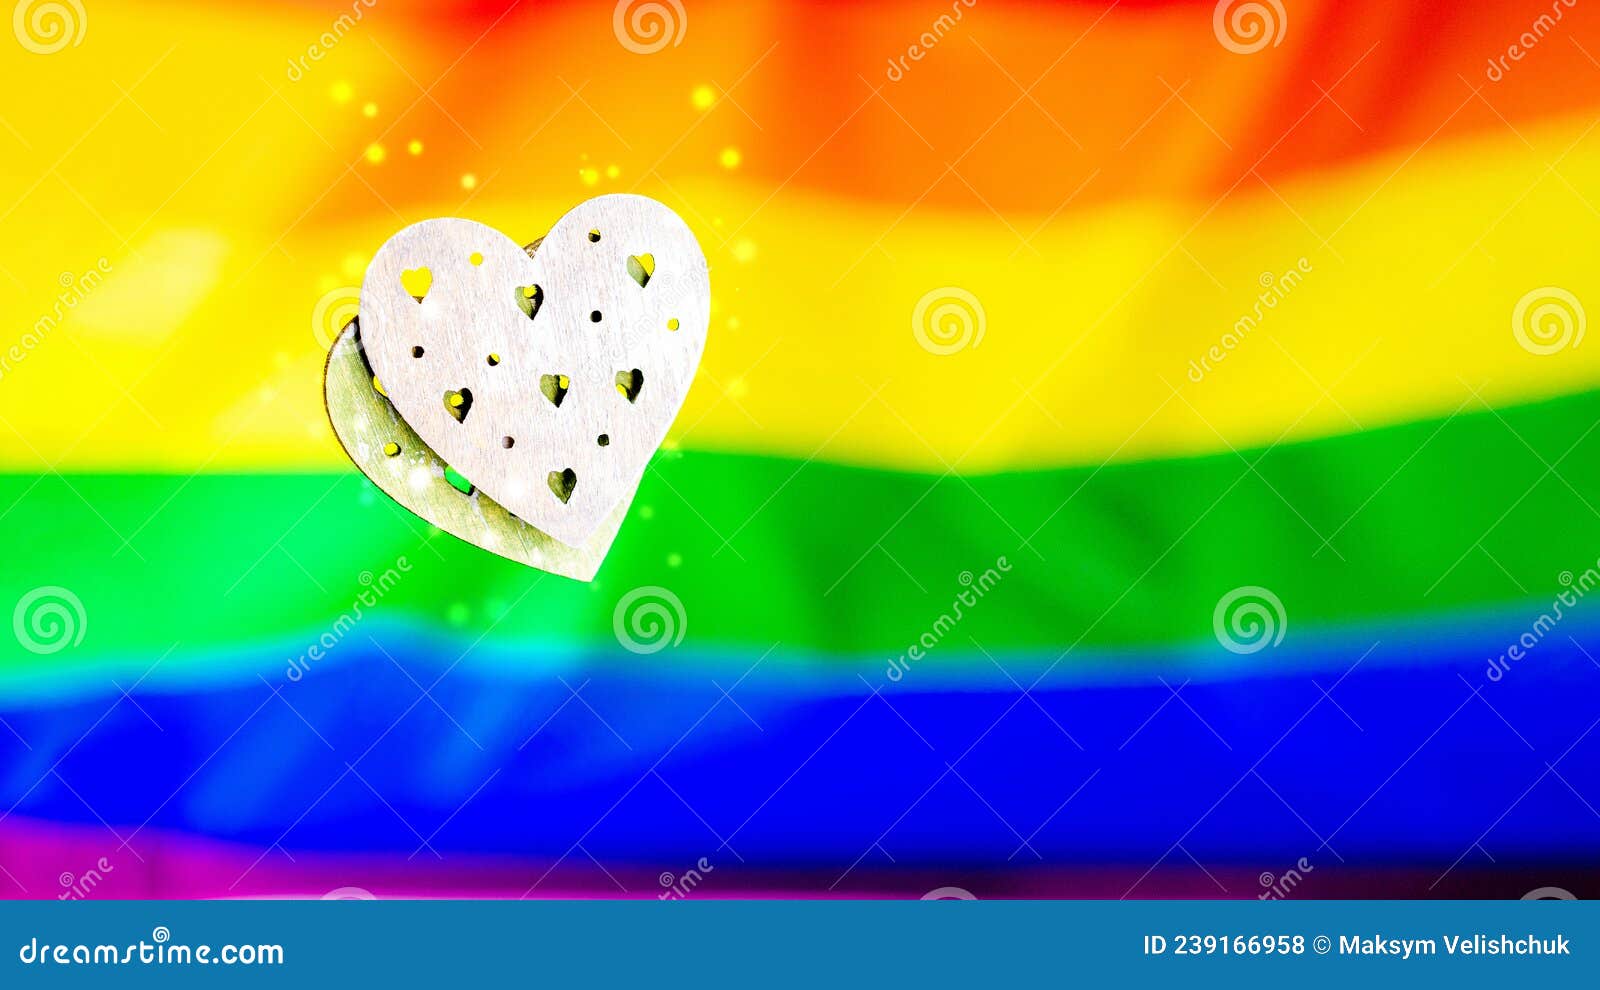 homosexual gay lesbian gay Coming